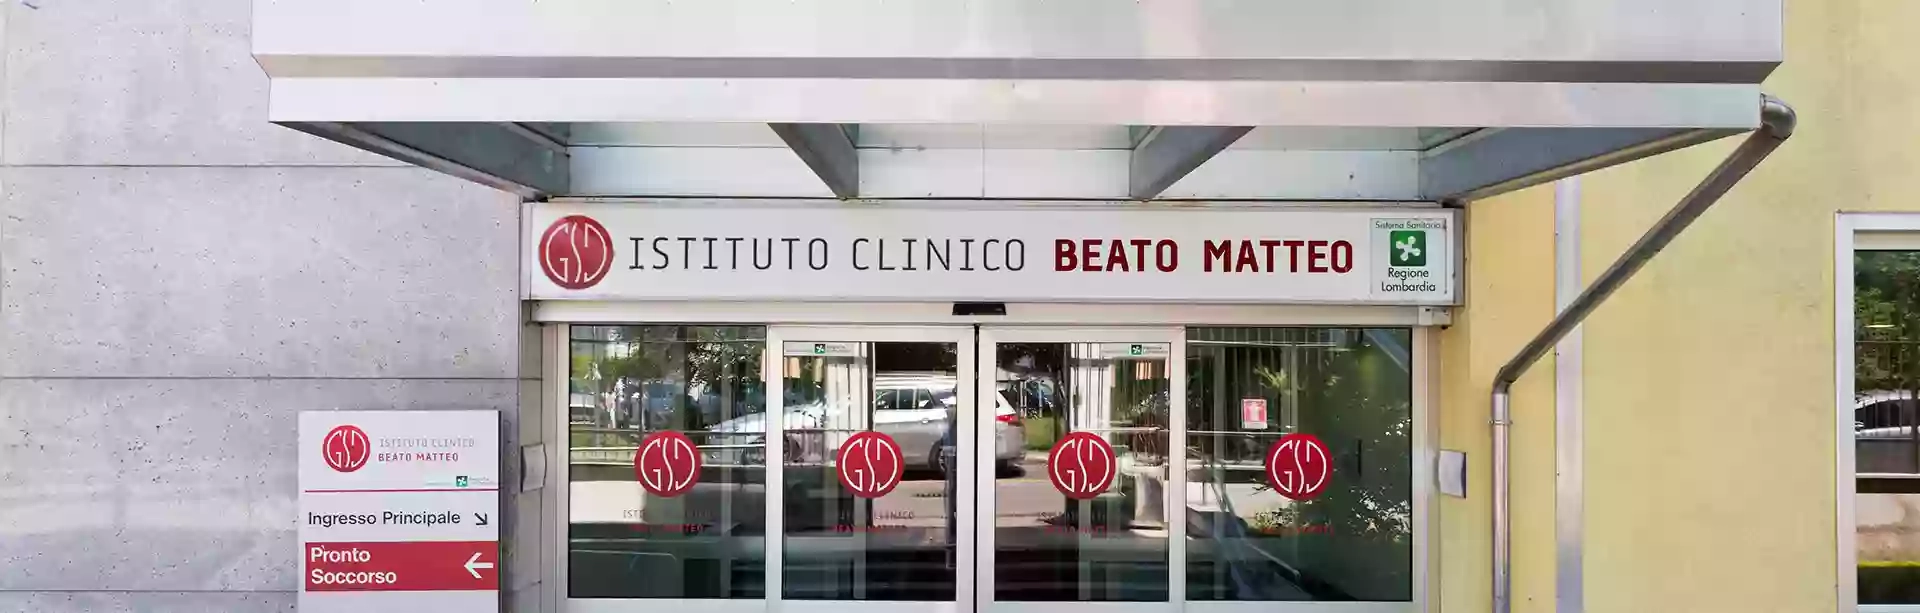 Istituto Clinico Beato Matteo Pronto Soccorso